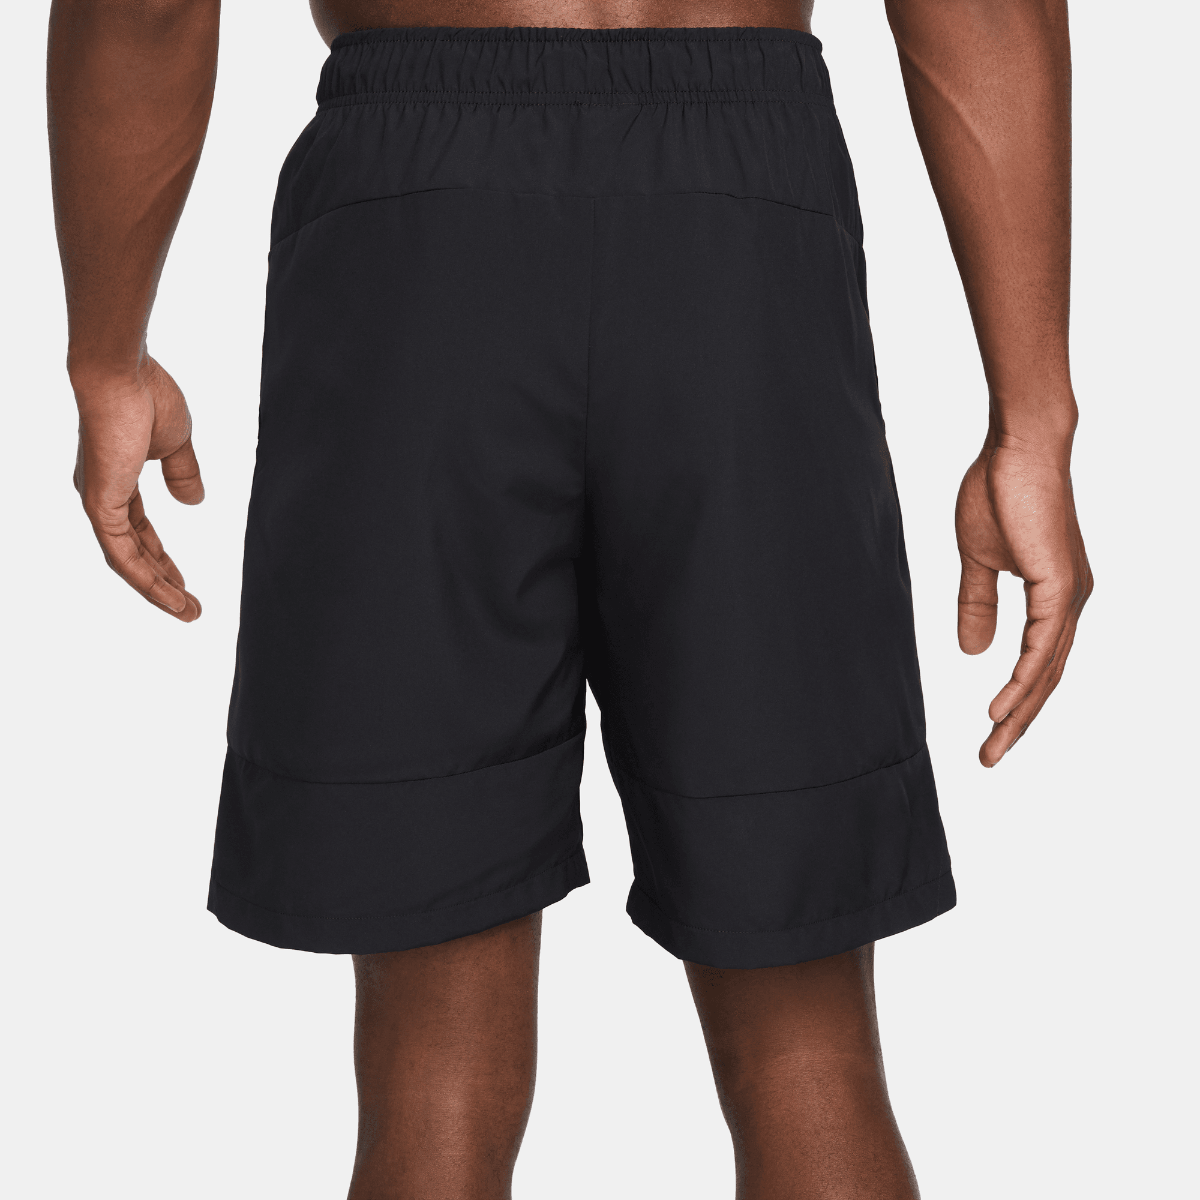 Nike Dri-Fit Flex Woven 9 Short - Black/Black/White